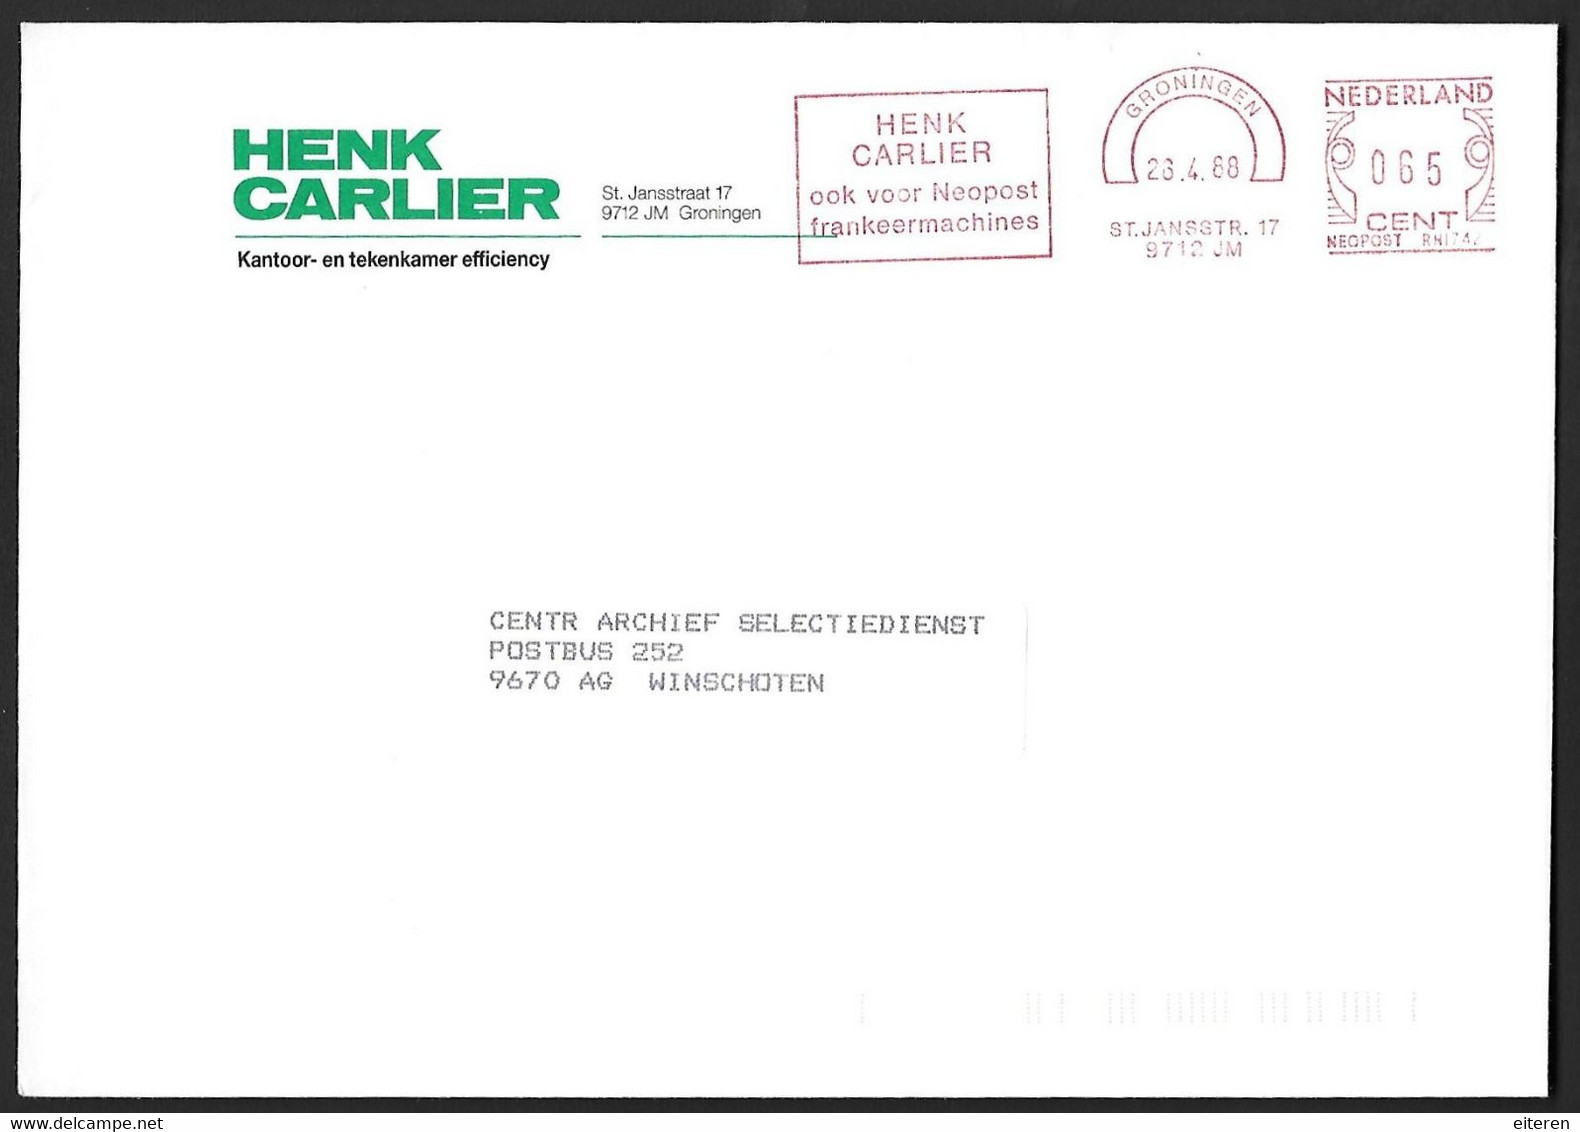 Henk Carlier - Ook Voor Neopost Frankeermachines - Frankeermachines (EMA)